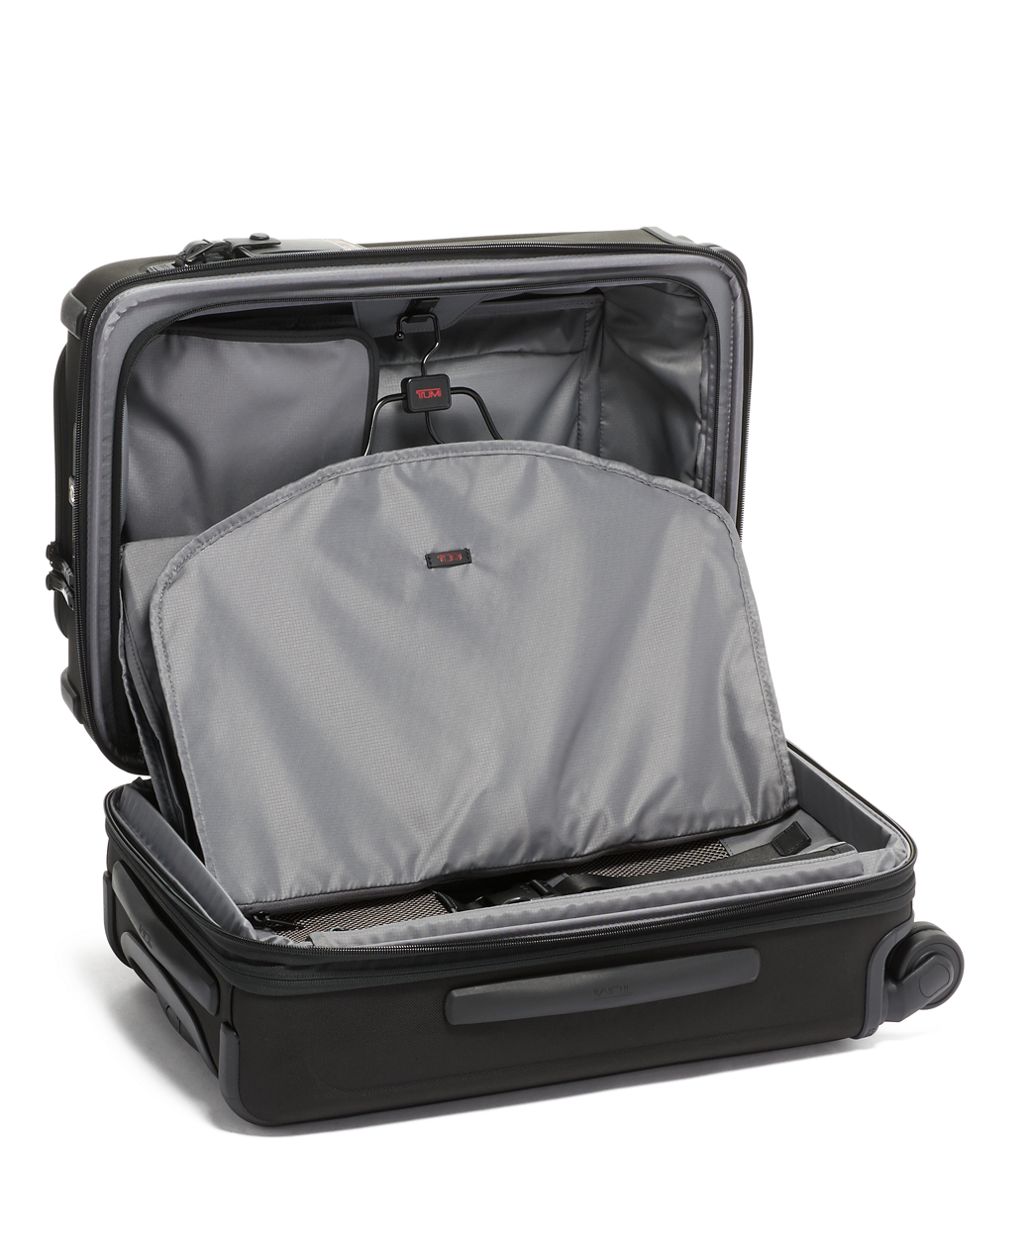 TUMI International Expandable 4-Wheel Carry-On Luggage